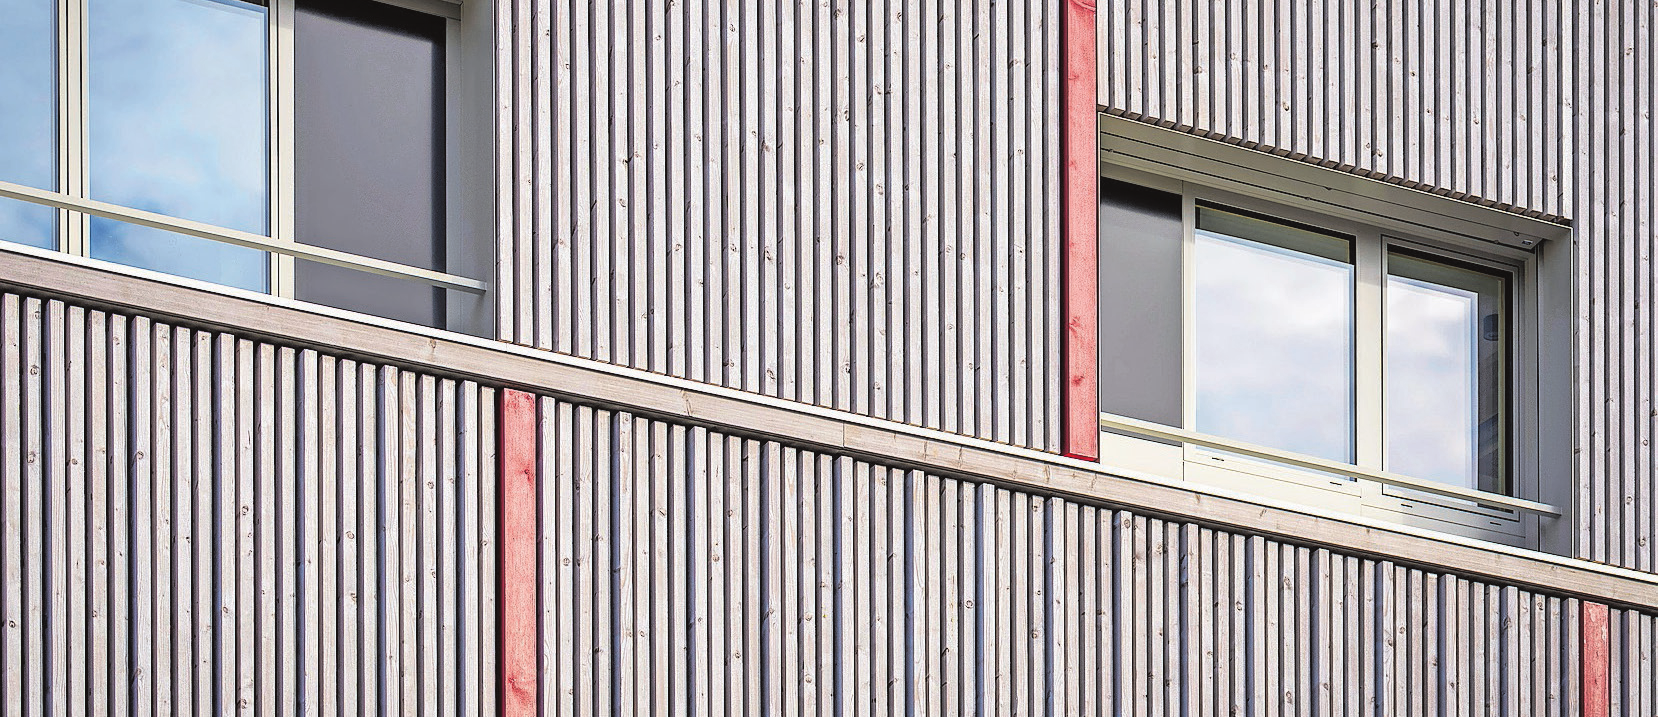 Vertikale Holzlamellen und Signalfarben lockern die Fassaden auf. Bilder: Daniel Ammann